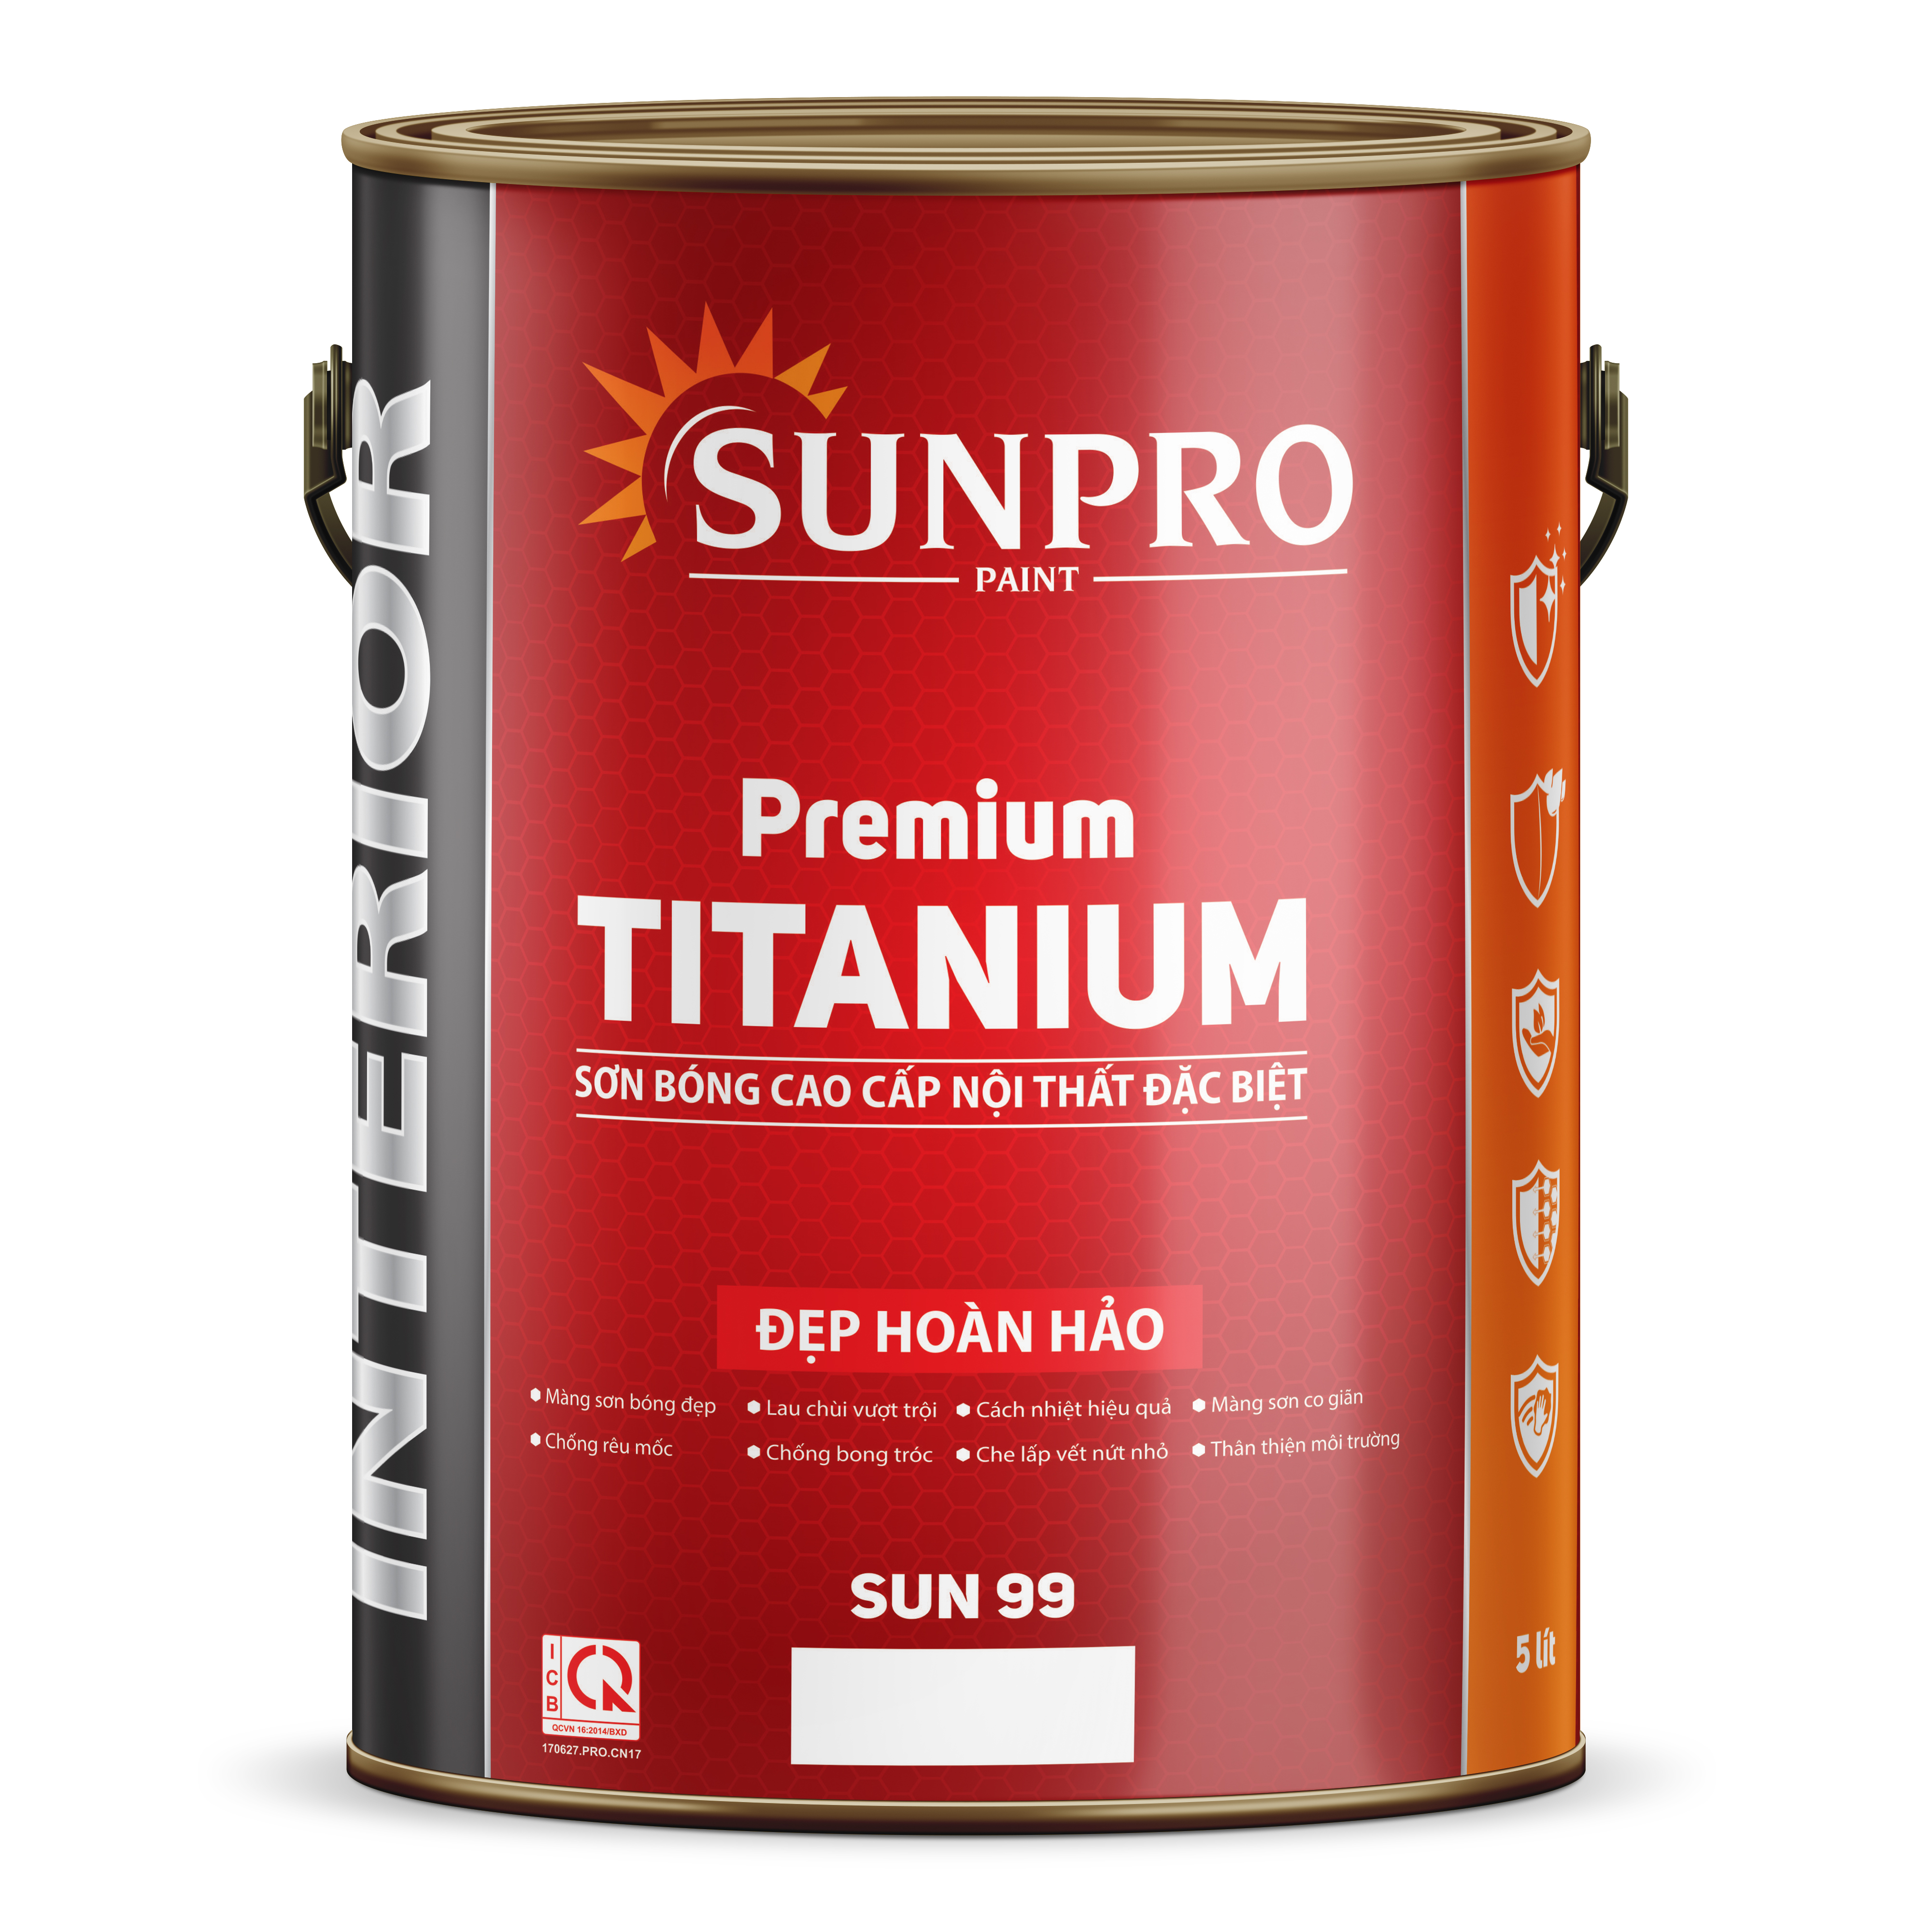 SUN99 - TITANIUM Sơn bóng cao cấp nội thất đặc biệt